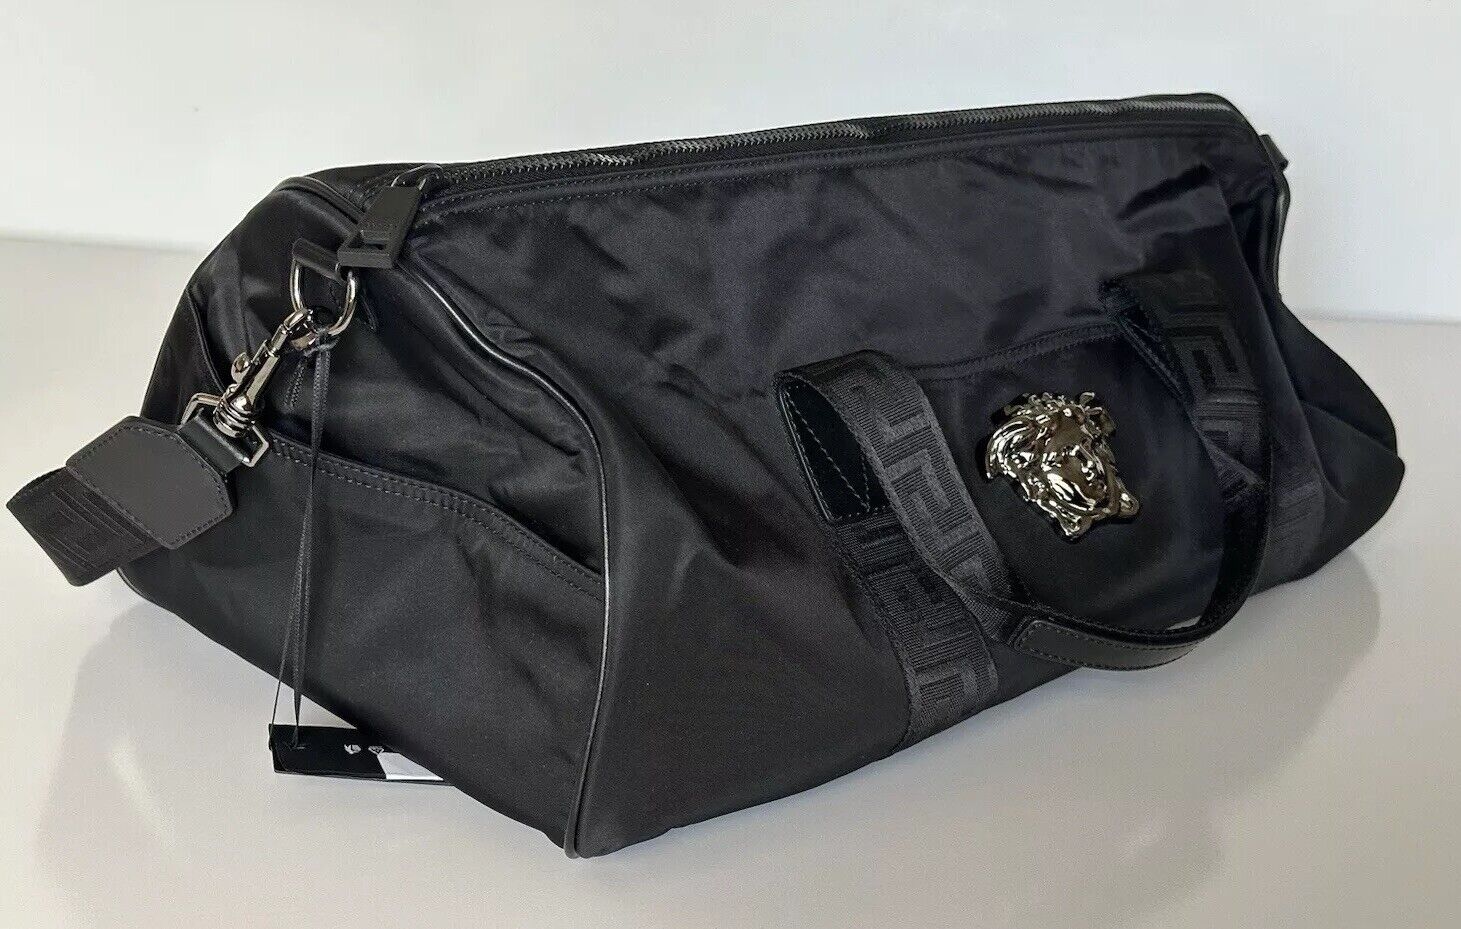 Versace Medusa Head & Greca Key Nylon Duffle Bag Made in Italy 1014313 NWT $1400